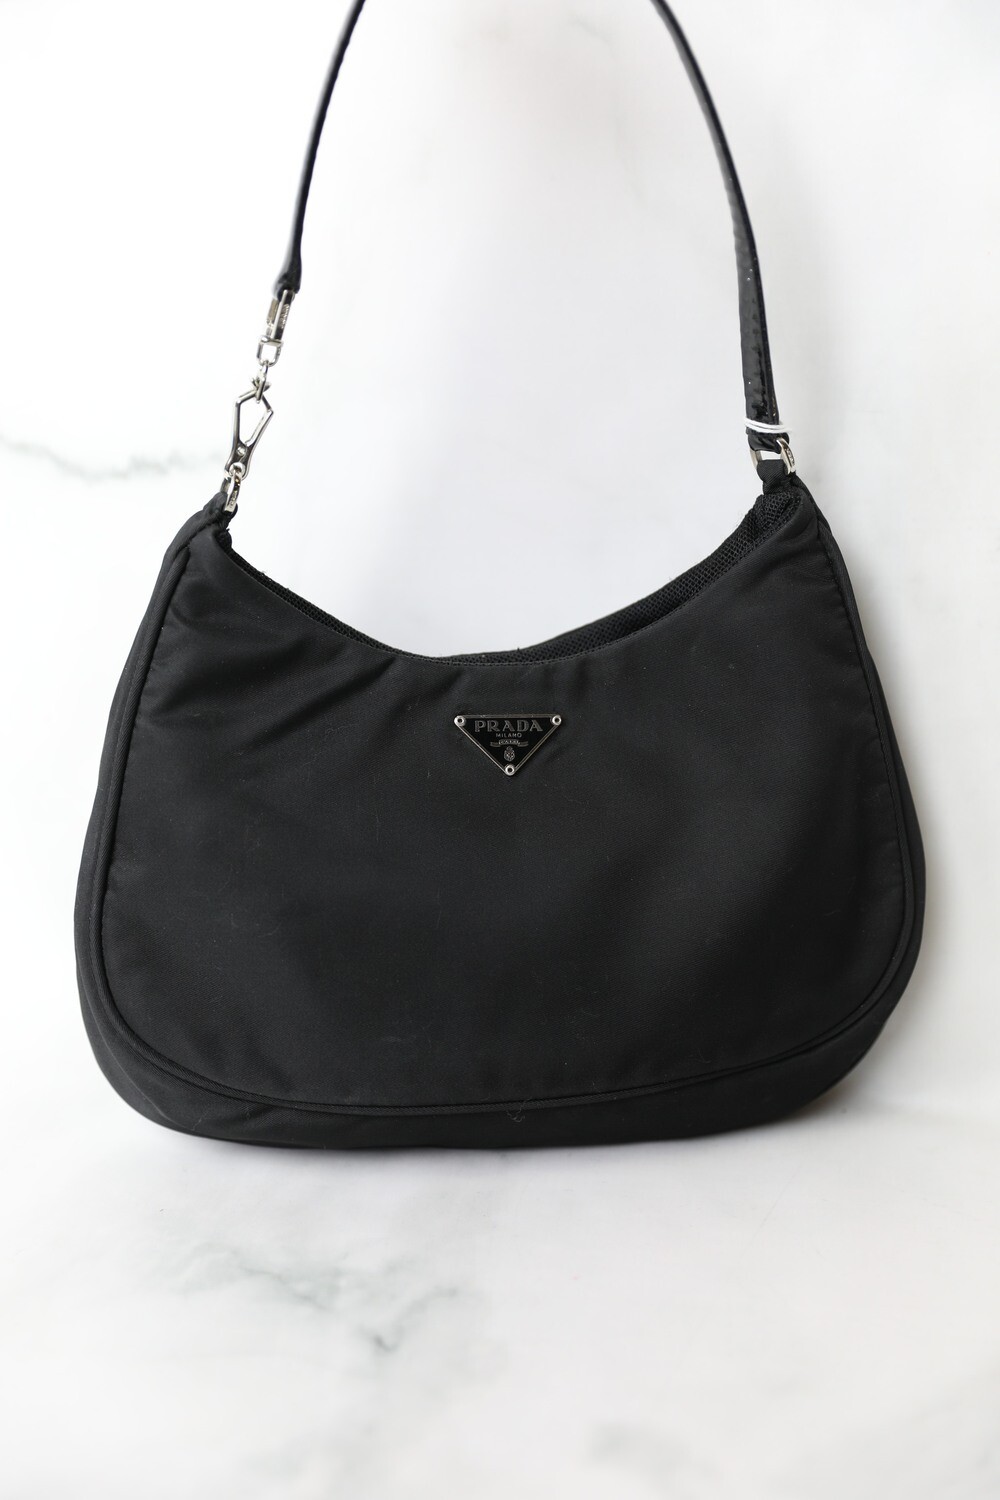 Prada Mini Hobo Bag, Black Nylon, Preowned in Dustbag WA001